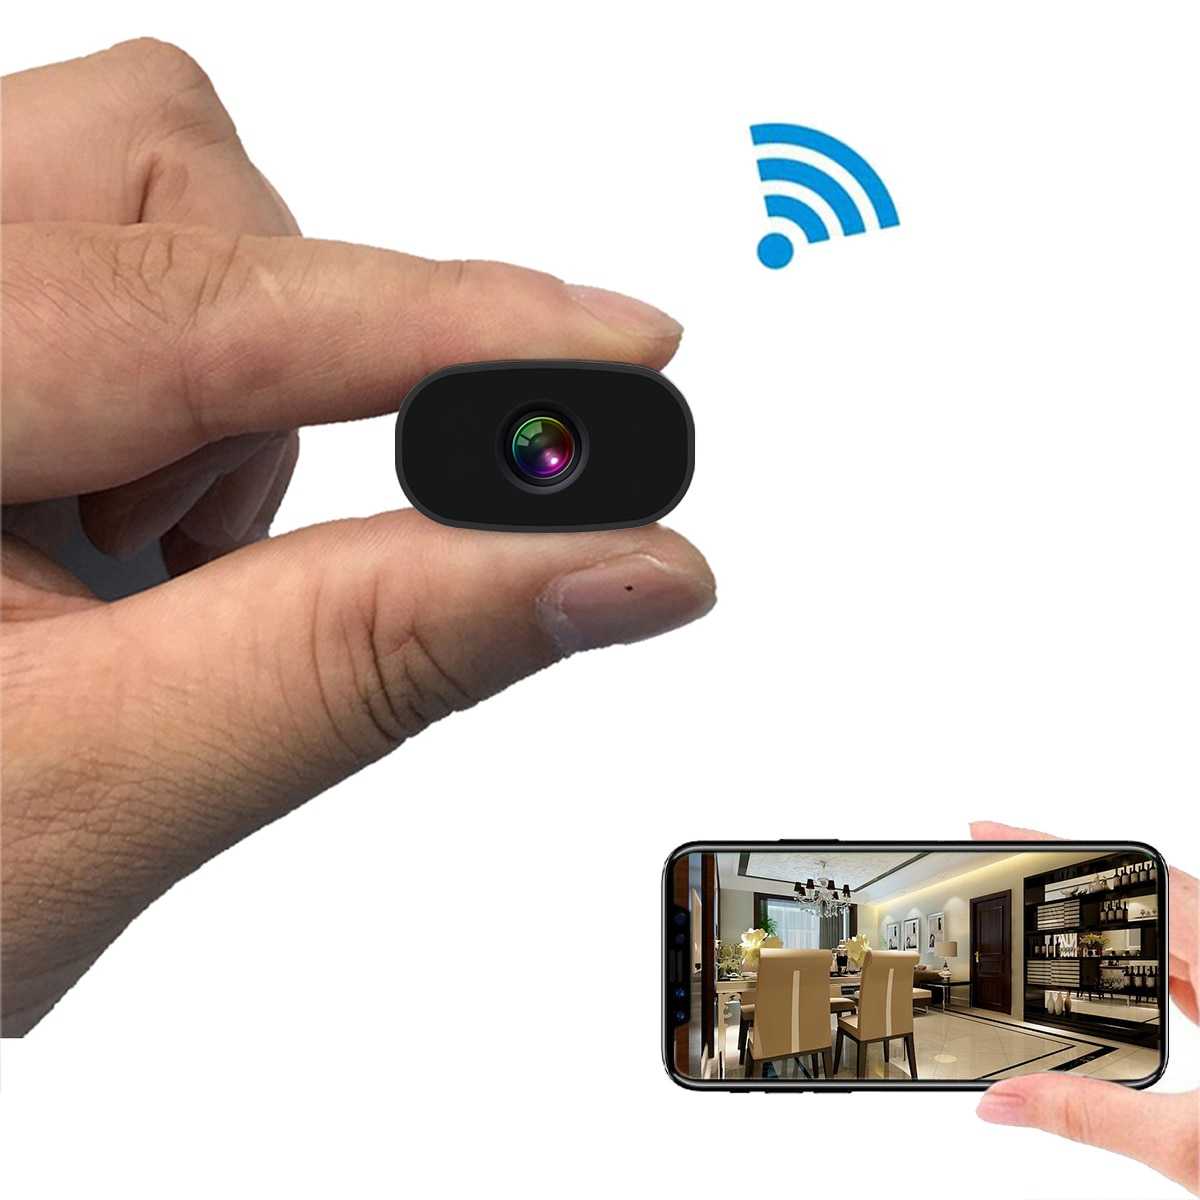 2 простых метода обнаружения скрытых камер - визуальный и технический, излюбленные мета установки устройств тайного видеонаблюдения